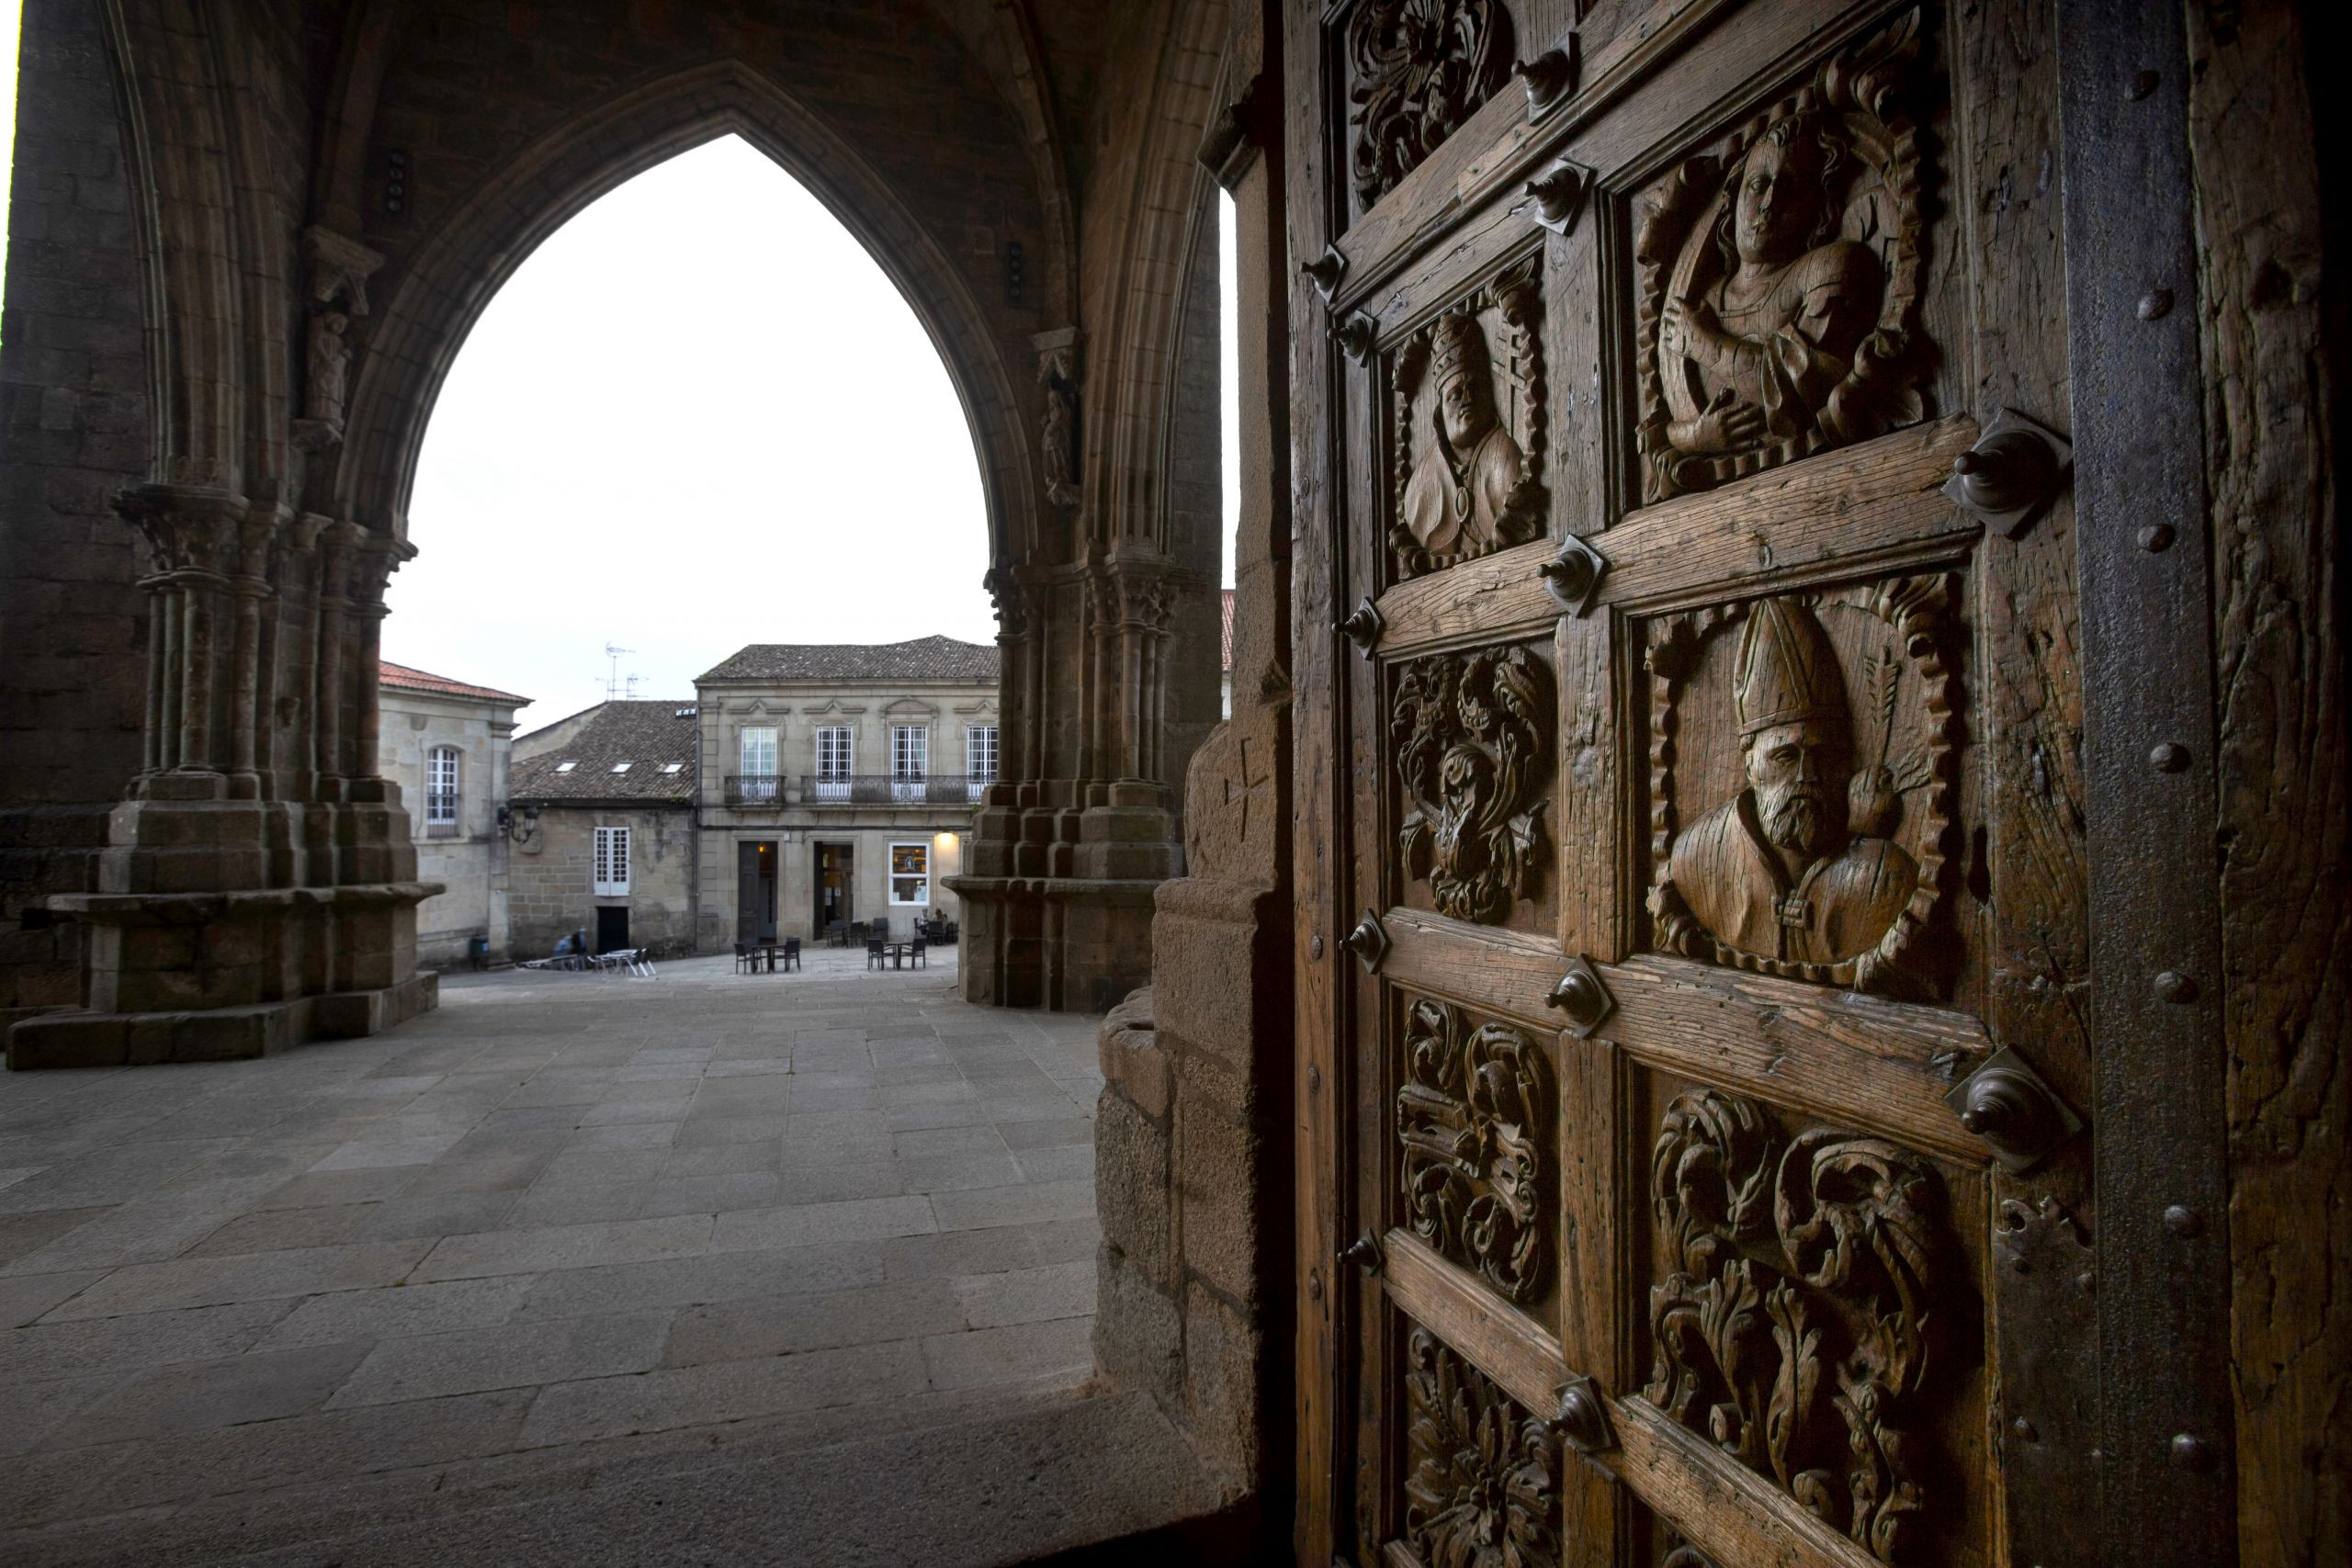 Grabado de madera en la puerta de la catedral de Tui, Pontevedra. Foto: Shutterstock